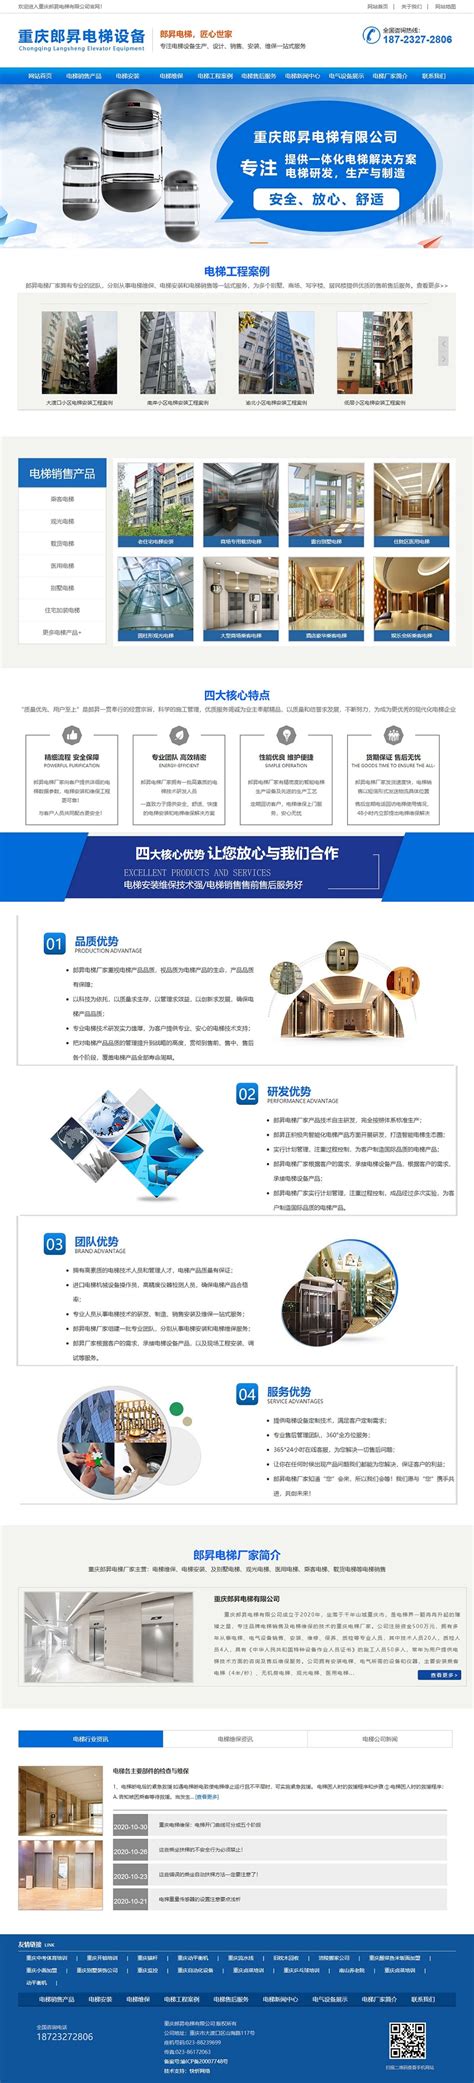 重庆网站建设免费公司